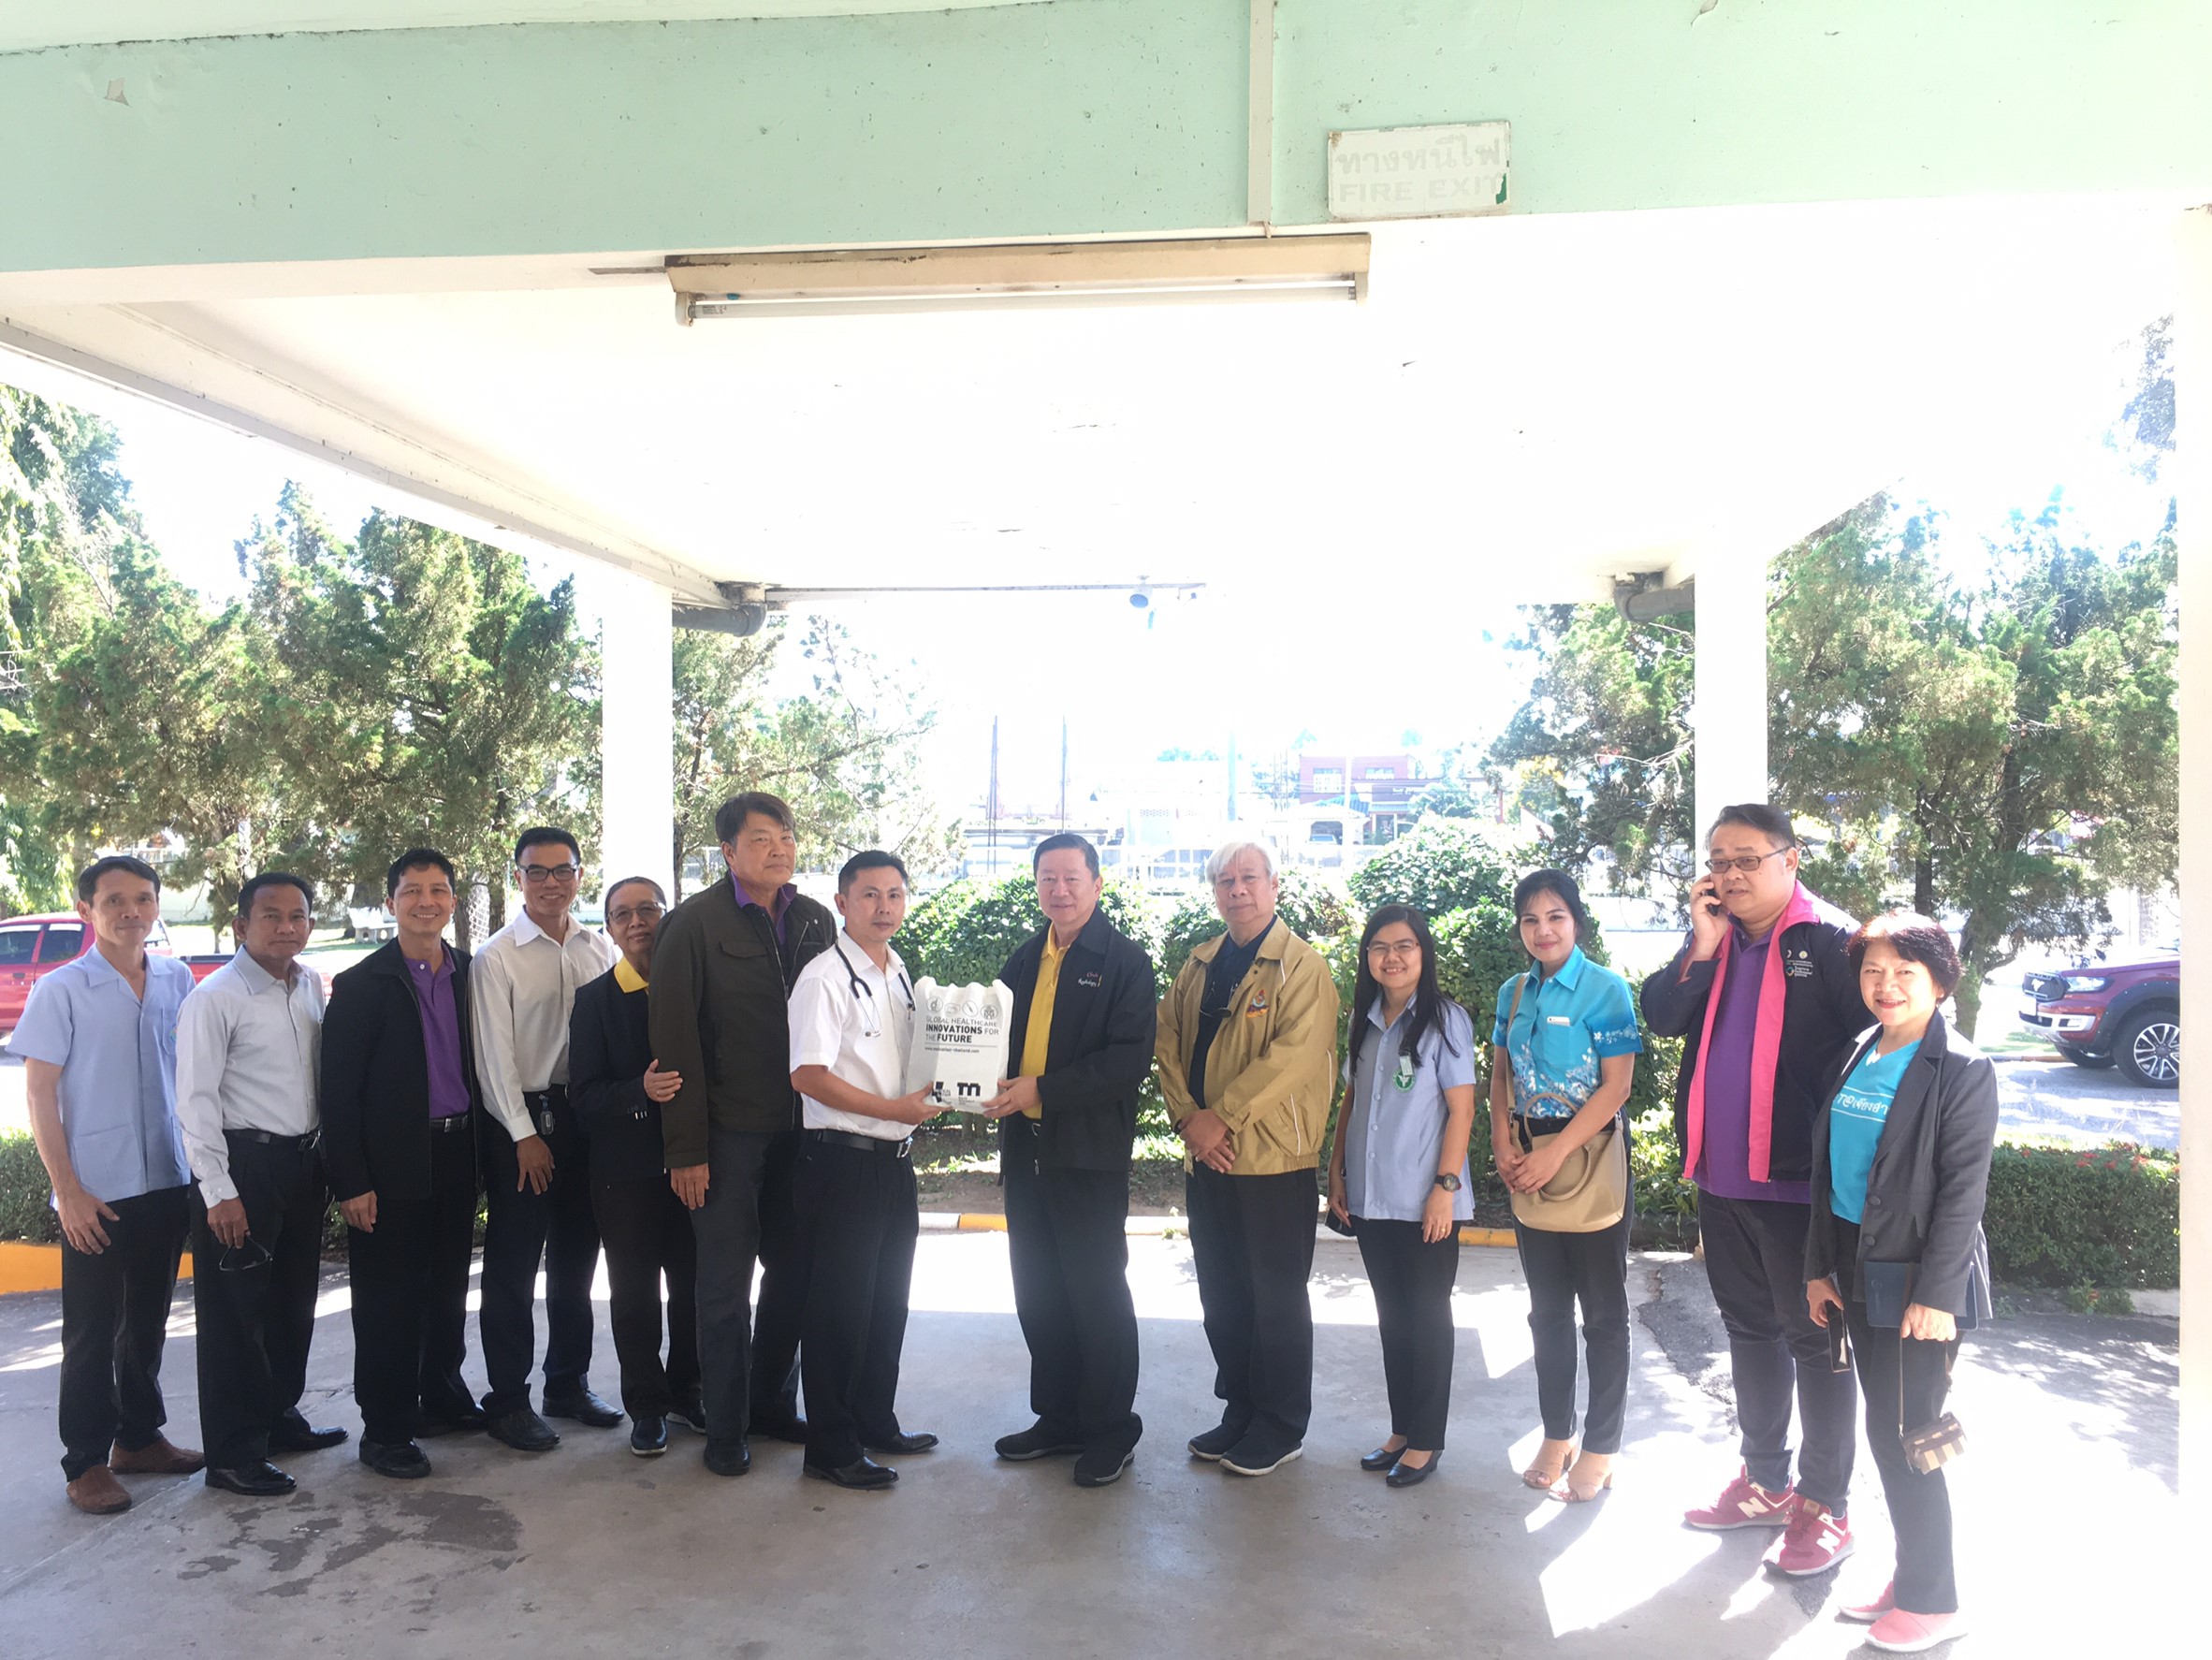 ประชุมวิชาการร่วมกับรังสีการแพทย์แห่งประเทศไทย ครั้งที่17 27-29 พ.ย. - พร้อมเข้าเยี่ยมและให้กำลังใจหน่วยงานรังสีวิทยาในพื้นที่จังหวัดอุบลราชธานีระหว่างวันที่ 25-26 พฤศจิกายน 2562 82